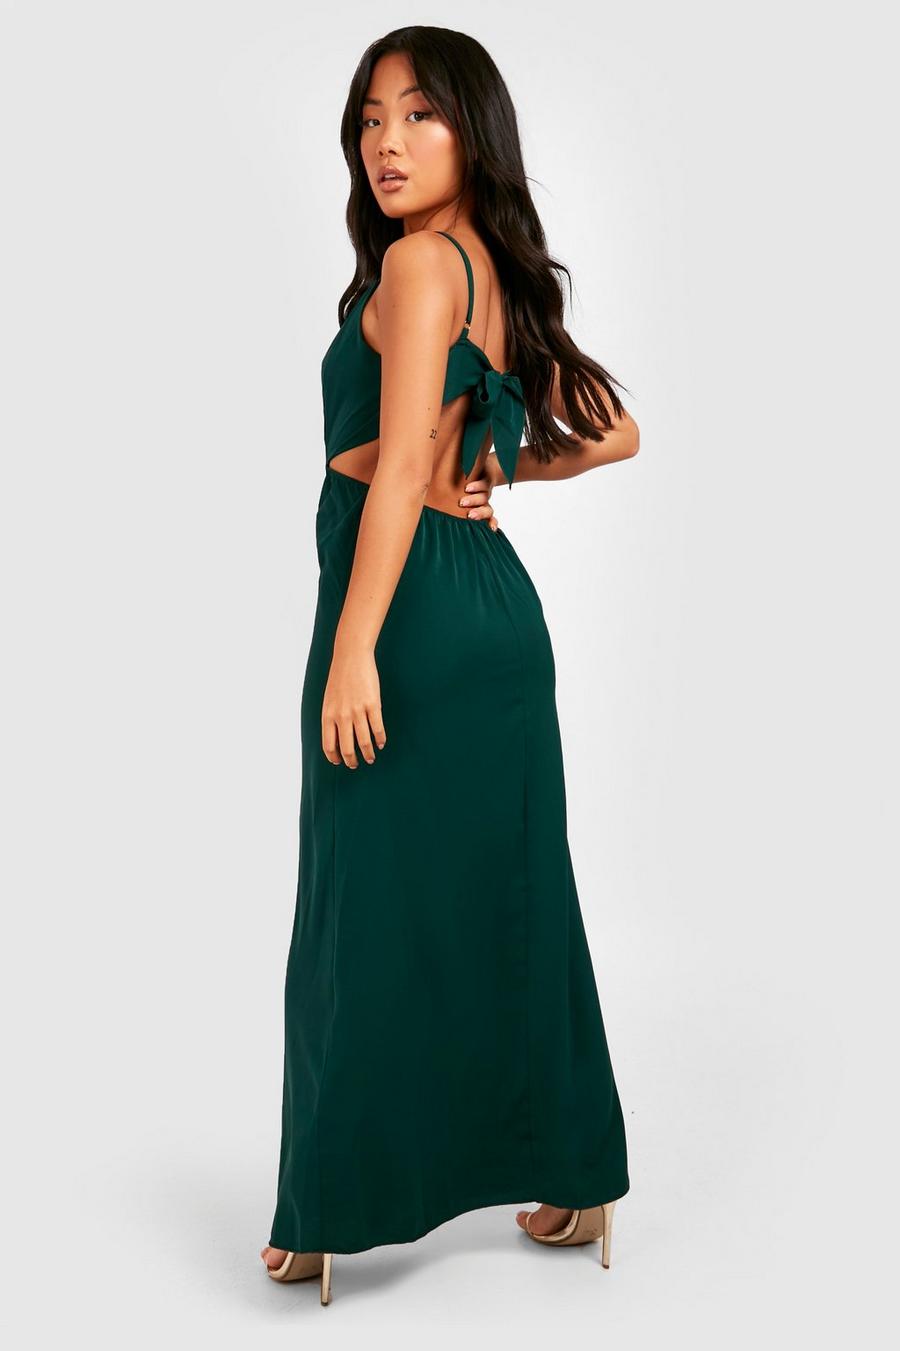 טורקיז green שמלת סאטן מקסי עם מחשוף עמוק וקשירה בגב, פטיט